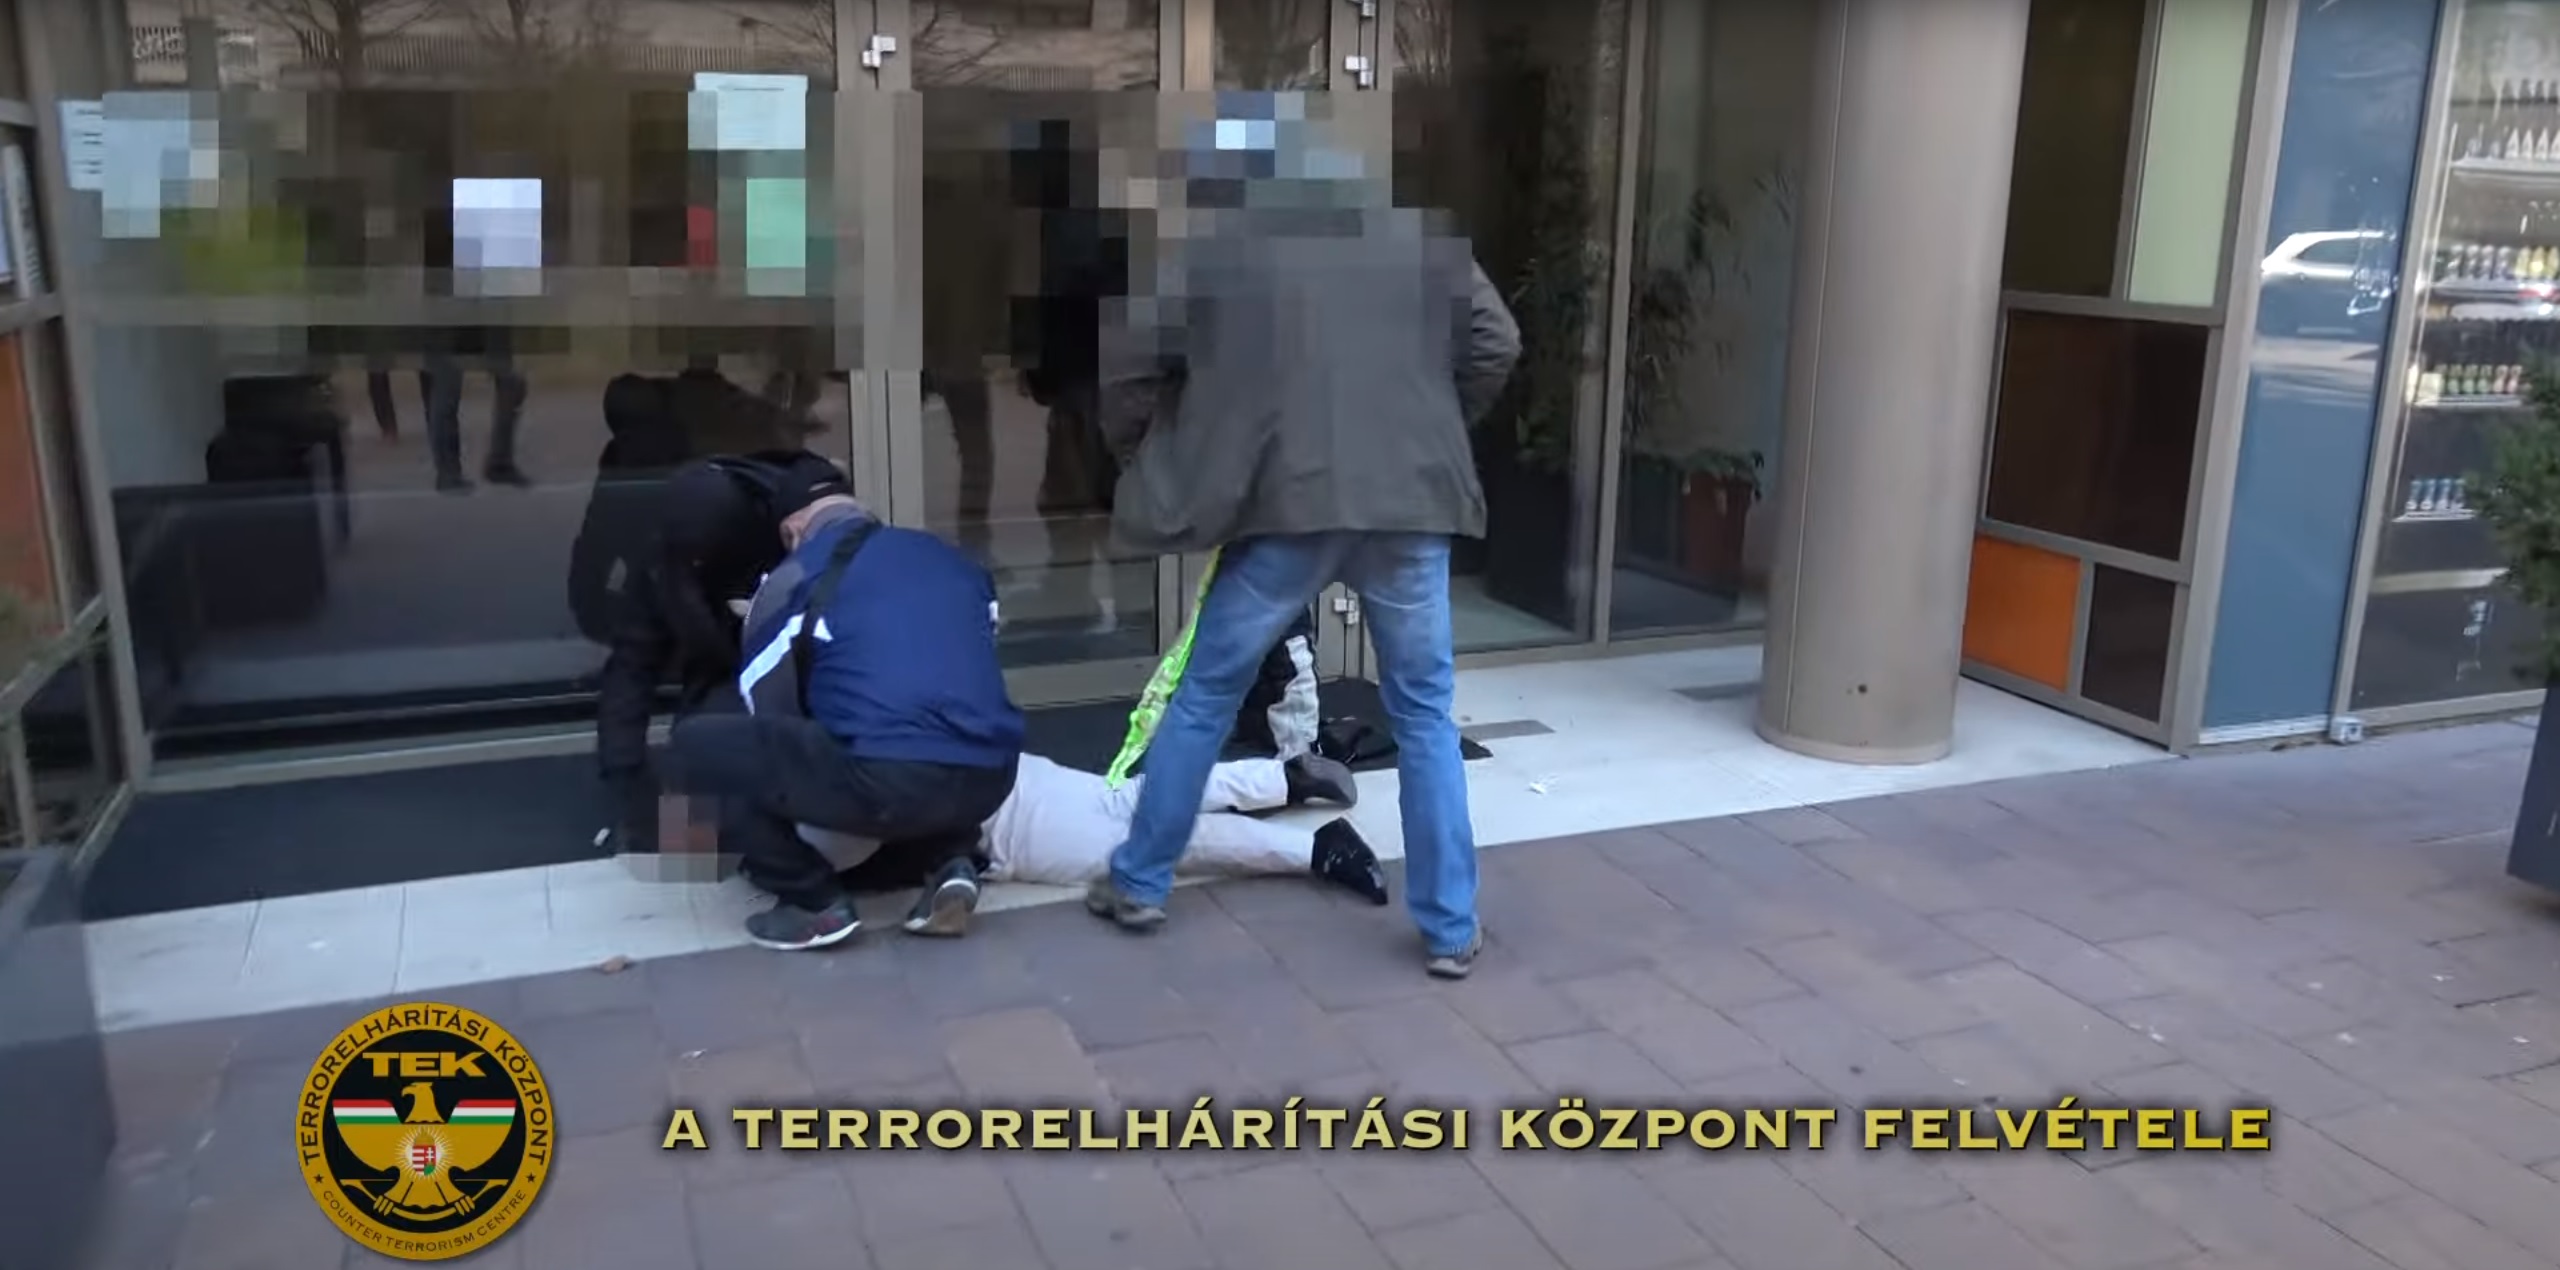 Un Polonais arrêté à Budapest pour enlèvement, prise d'otage et vol à main armée